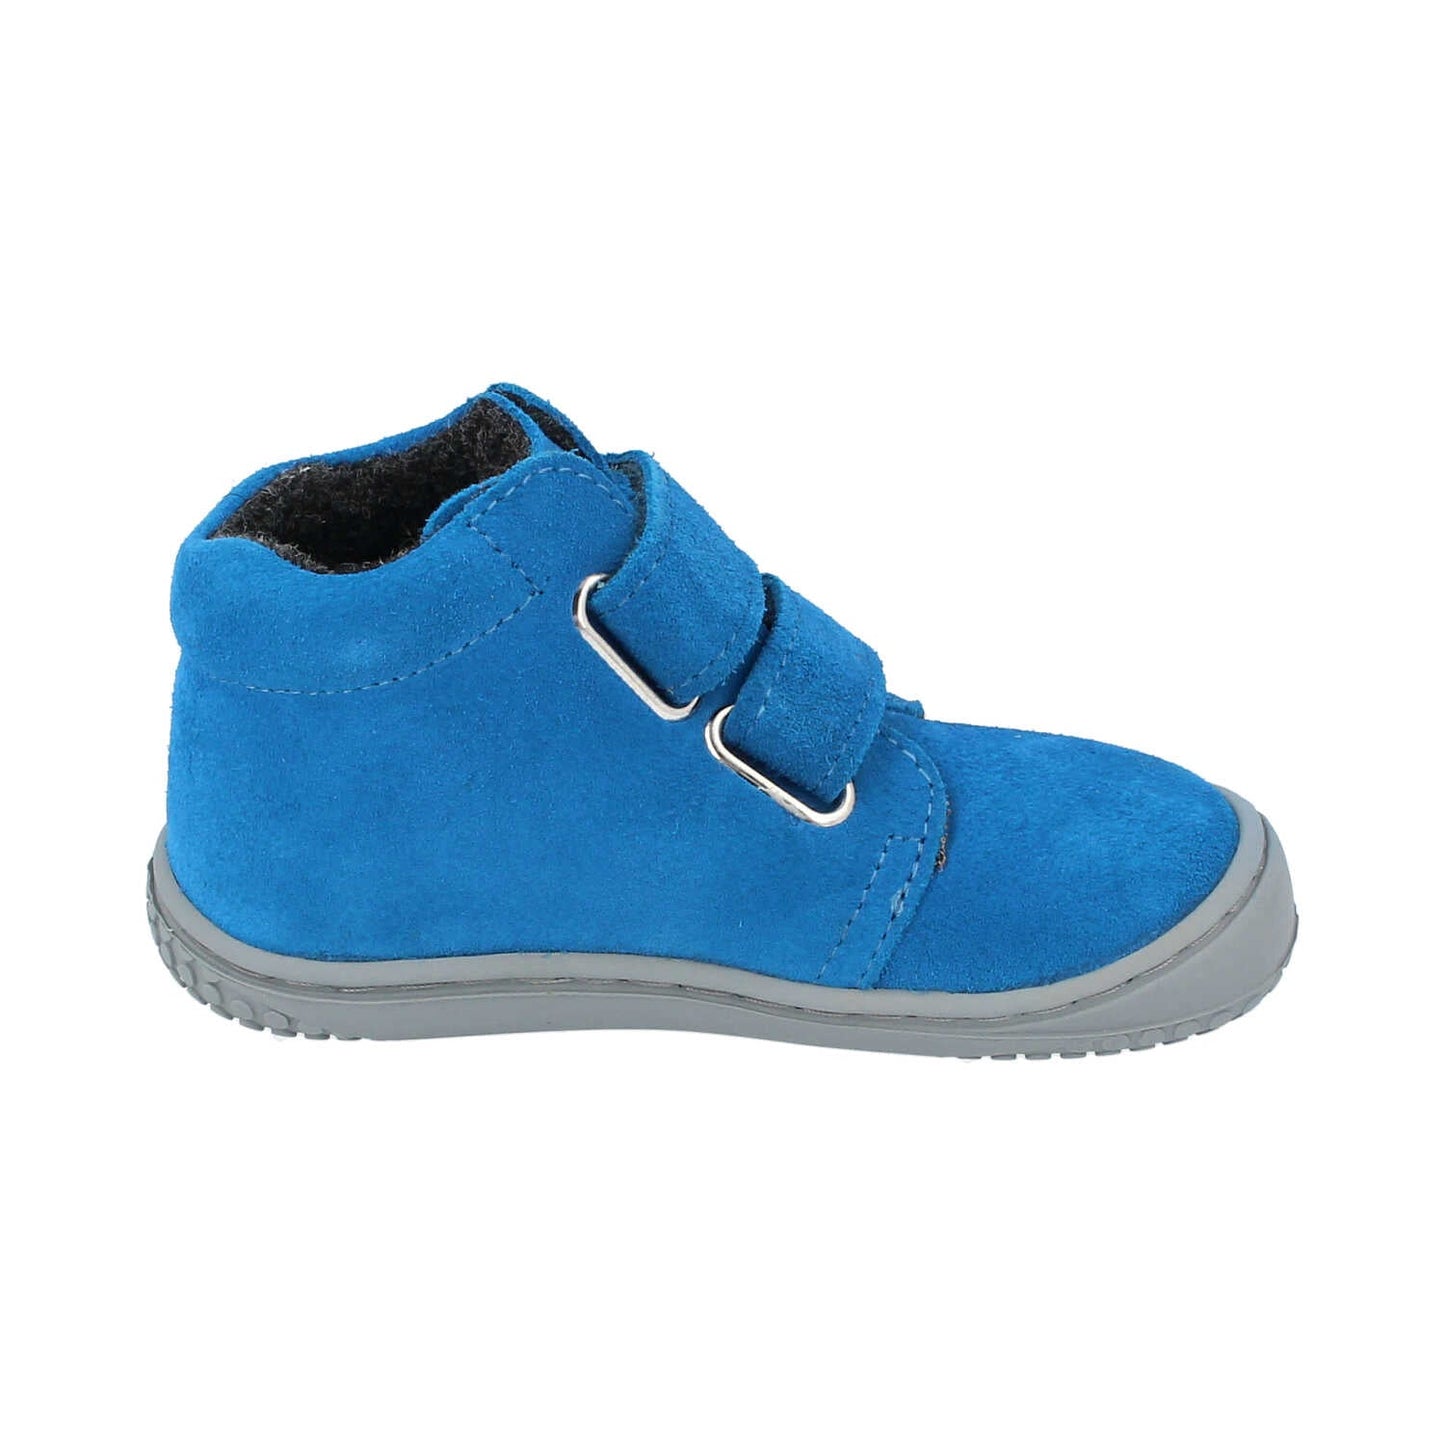 Filii Chameleon "Medium" barfods støvle til børn i farven electric blue fleece, inderside